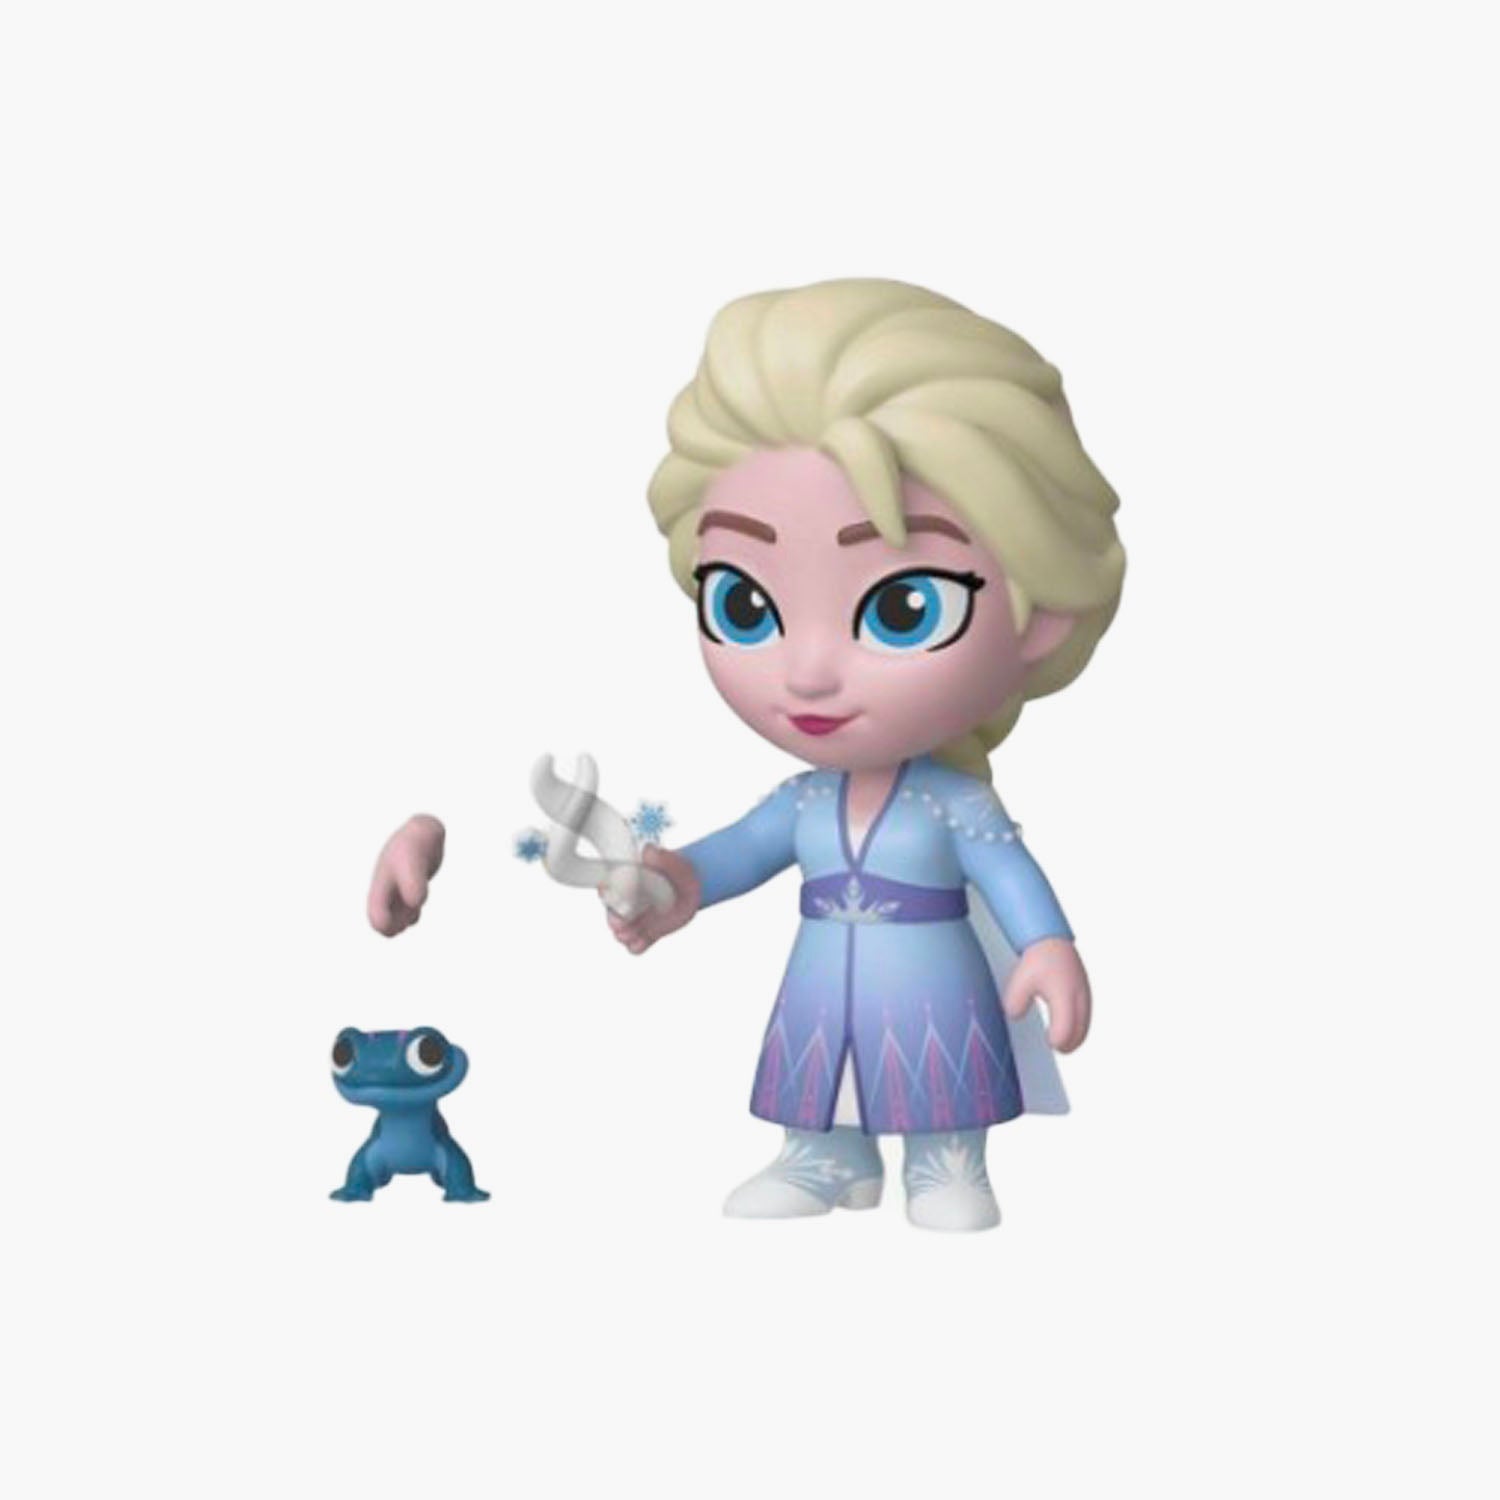 Elsa Frozen II Figurine